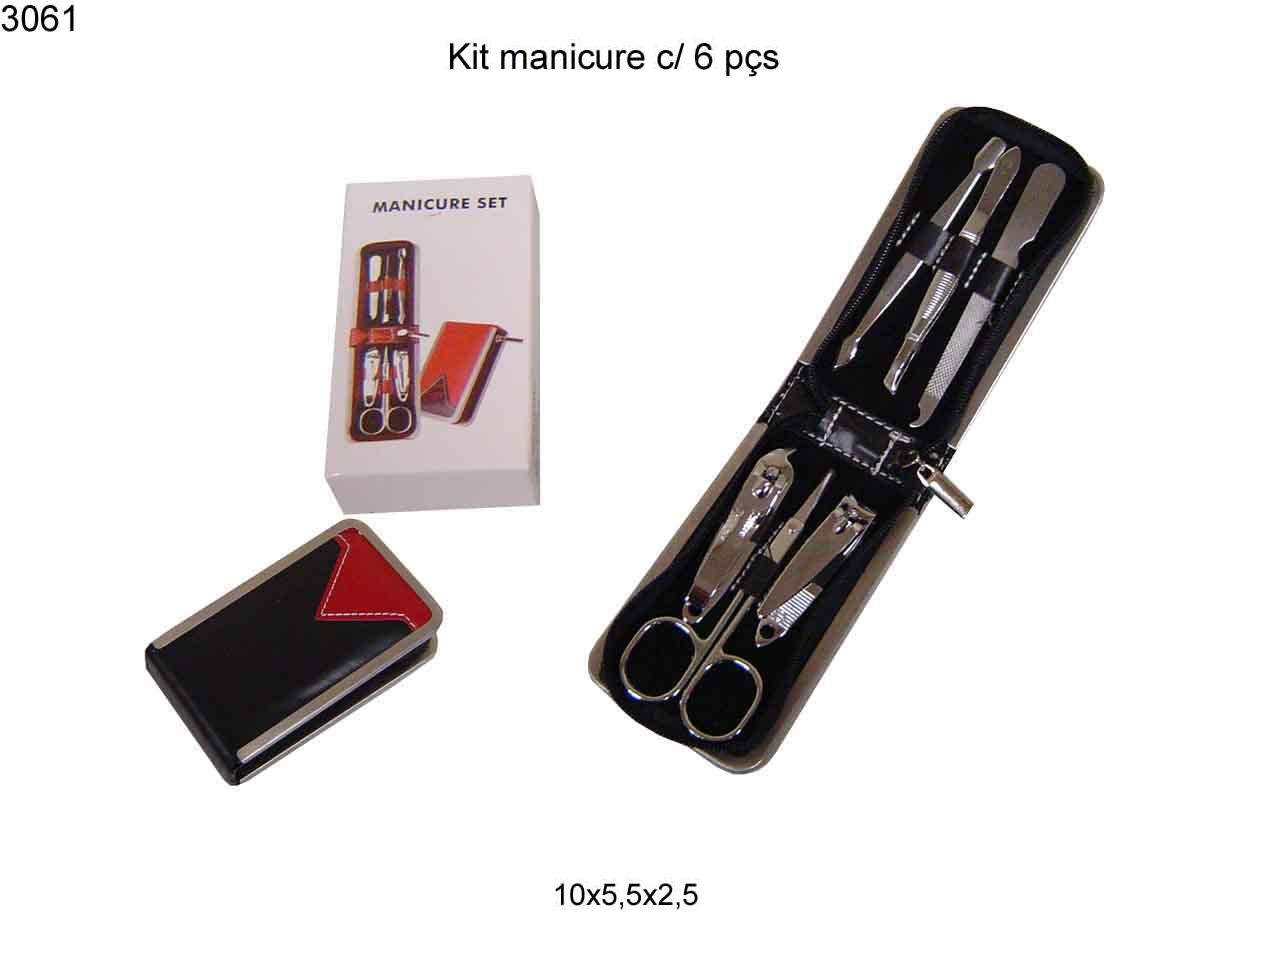 Kit manicure c/ 6 pcs (3061)